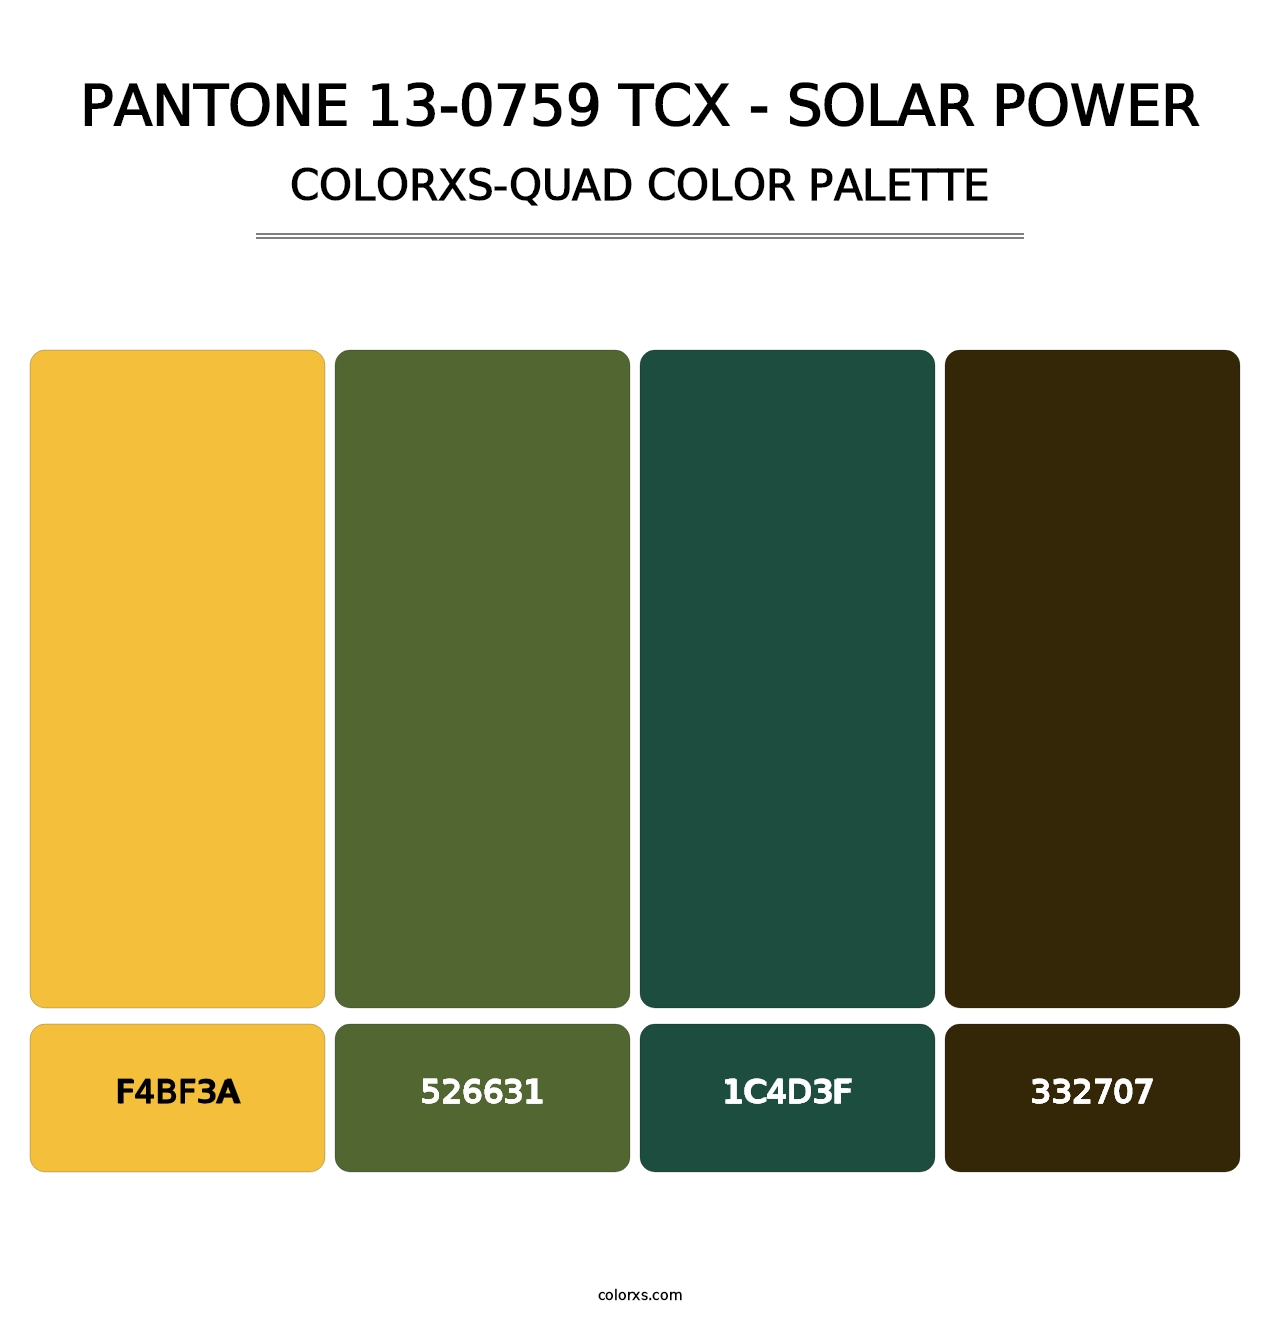 PANTONE 13-0759 TCX - Solar Power - Colorxs Quad Palette